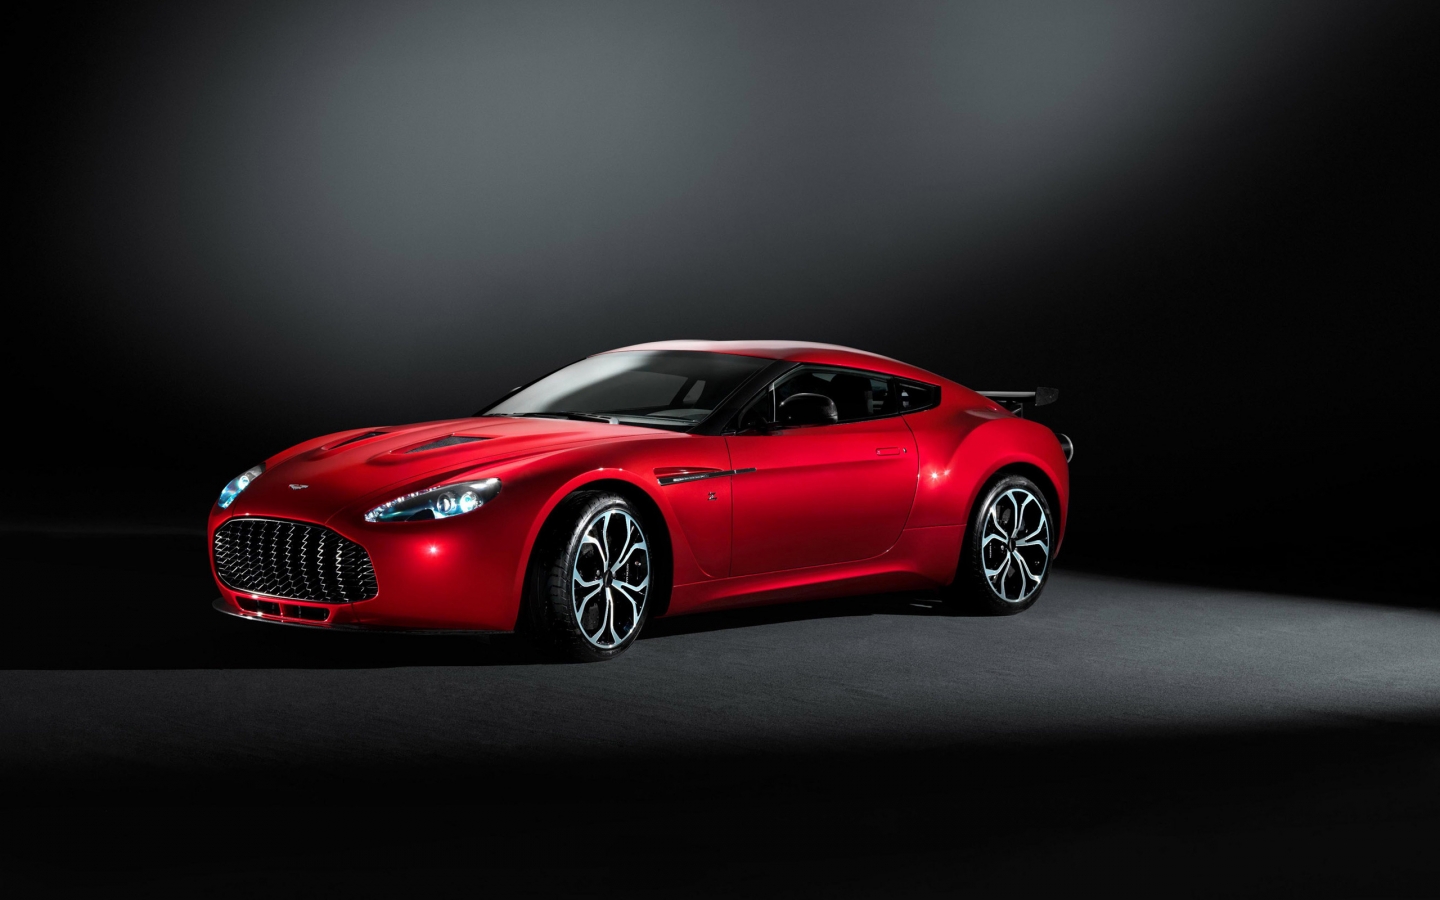 2013 Aston Martin V12 Zagato for 1440 x 900 widescreen resolution